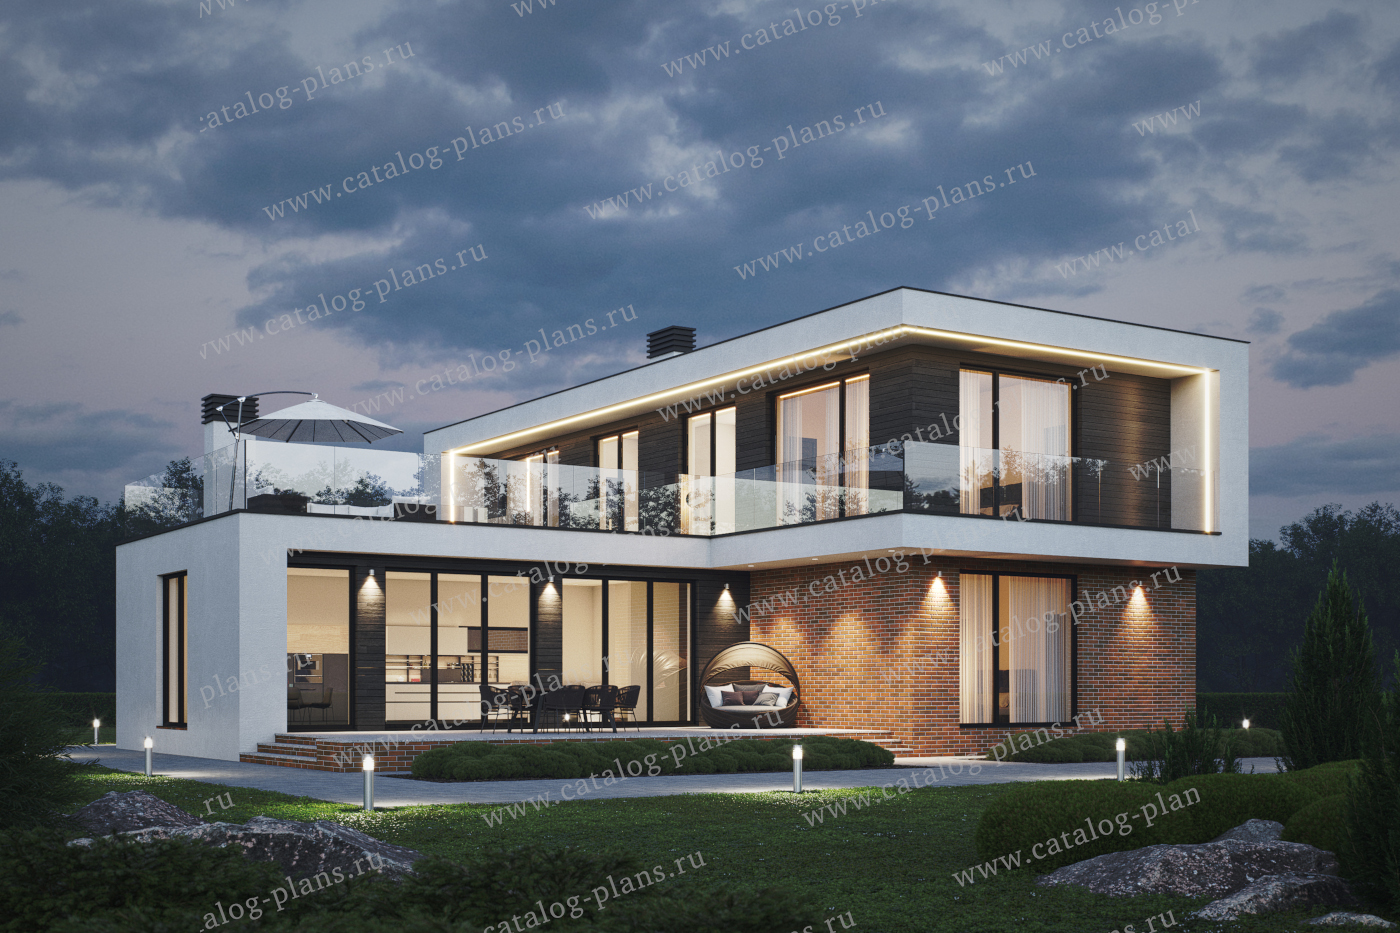 Проект 62-65BKL, жилой дом, материал - монолитный ж/б каркас с заполнением поризованным керамическим блоком 510, количество этажей - 2, архитектурный стиль - хай-тек, фундамент - монолитная ж/б плита